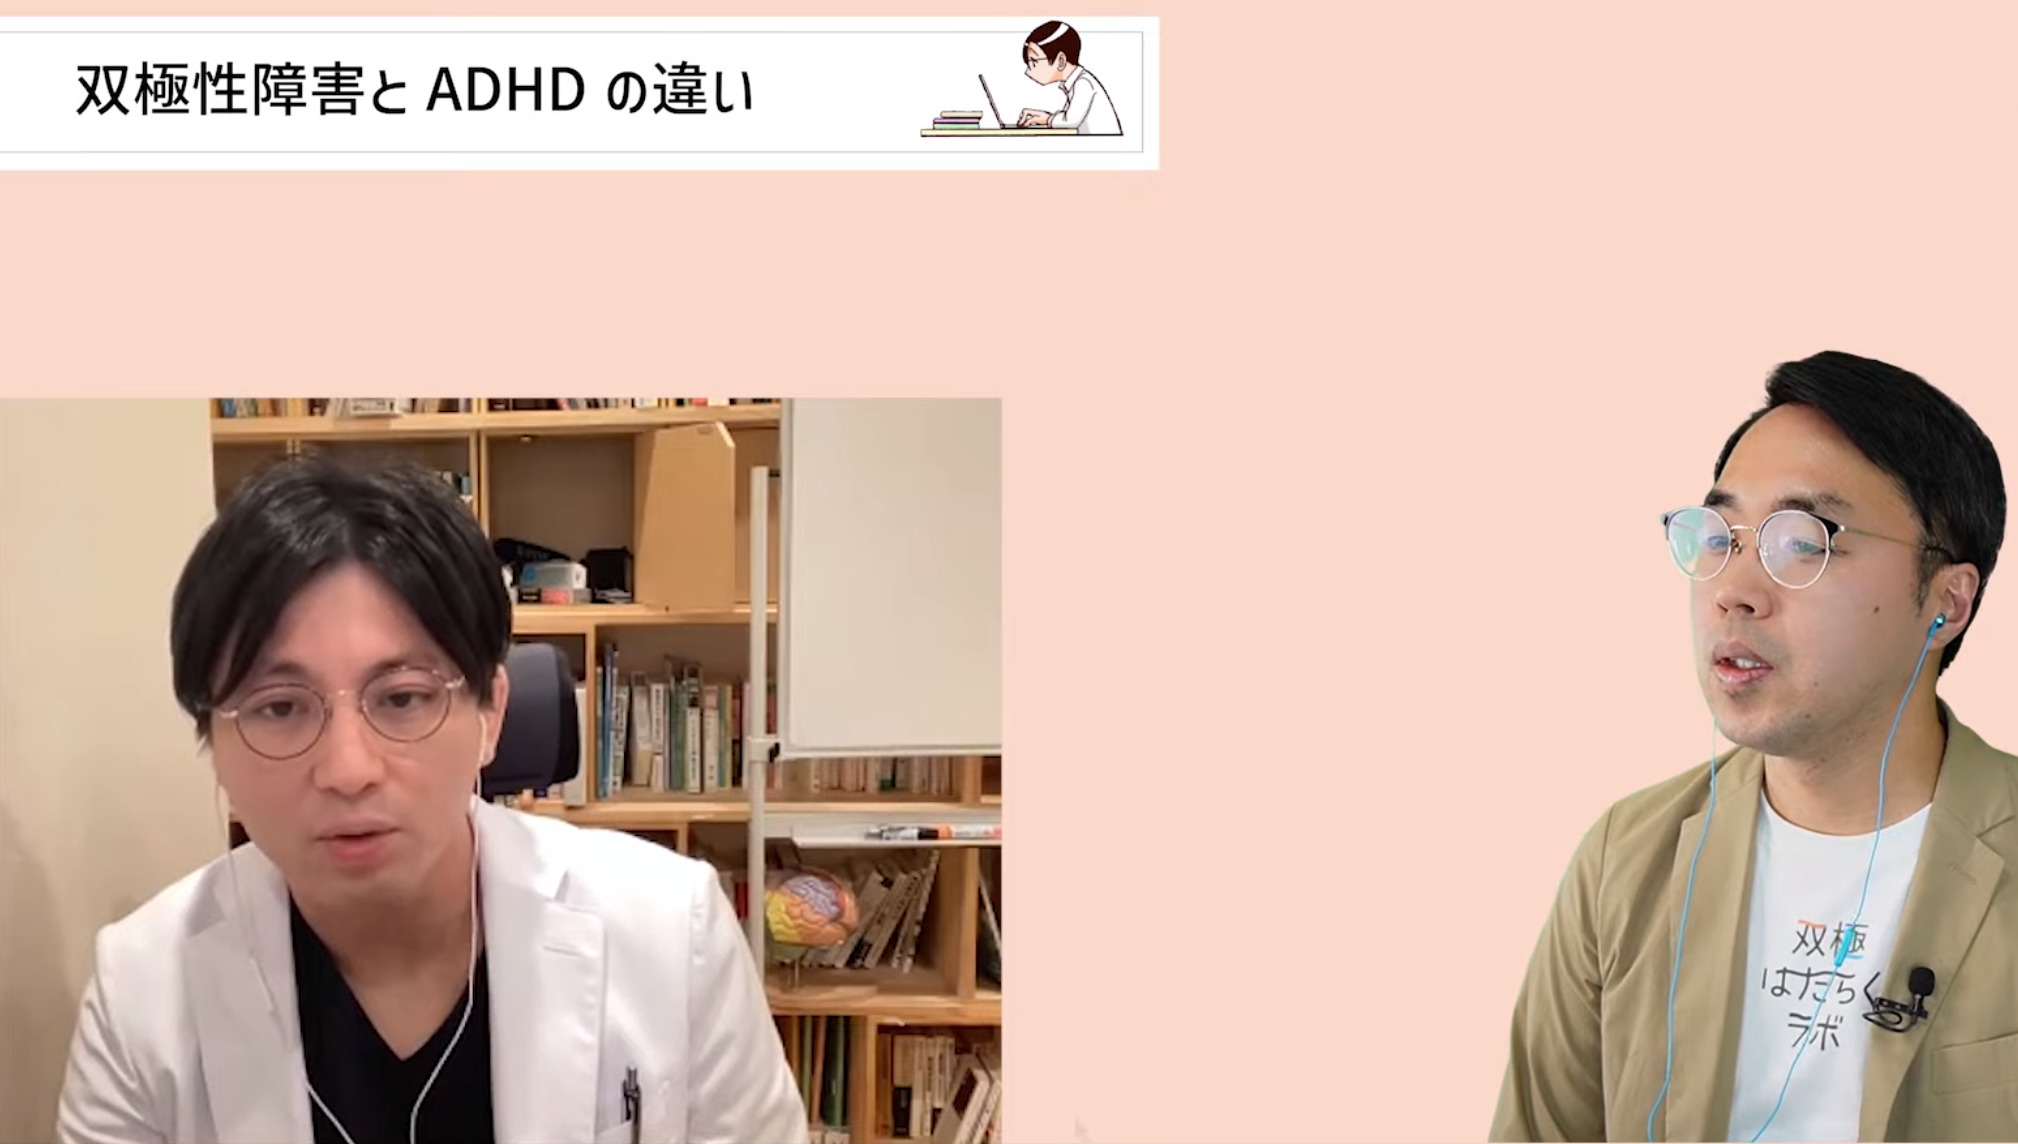 双極性障害とADHDの違いや誤診、仕事の工夫などを精神科医・益田裕介が解説